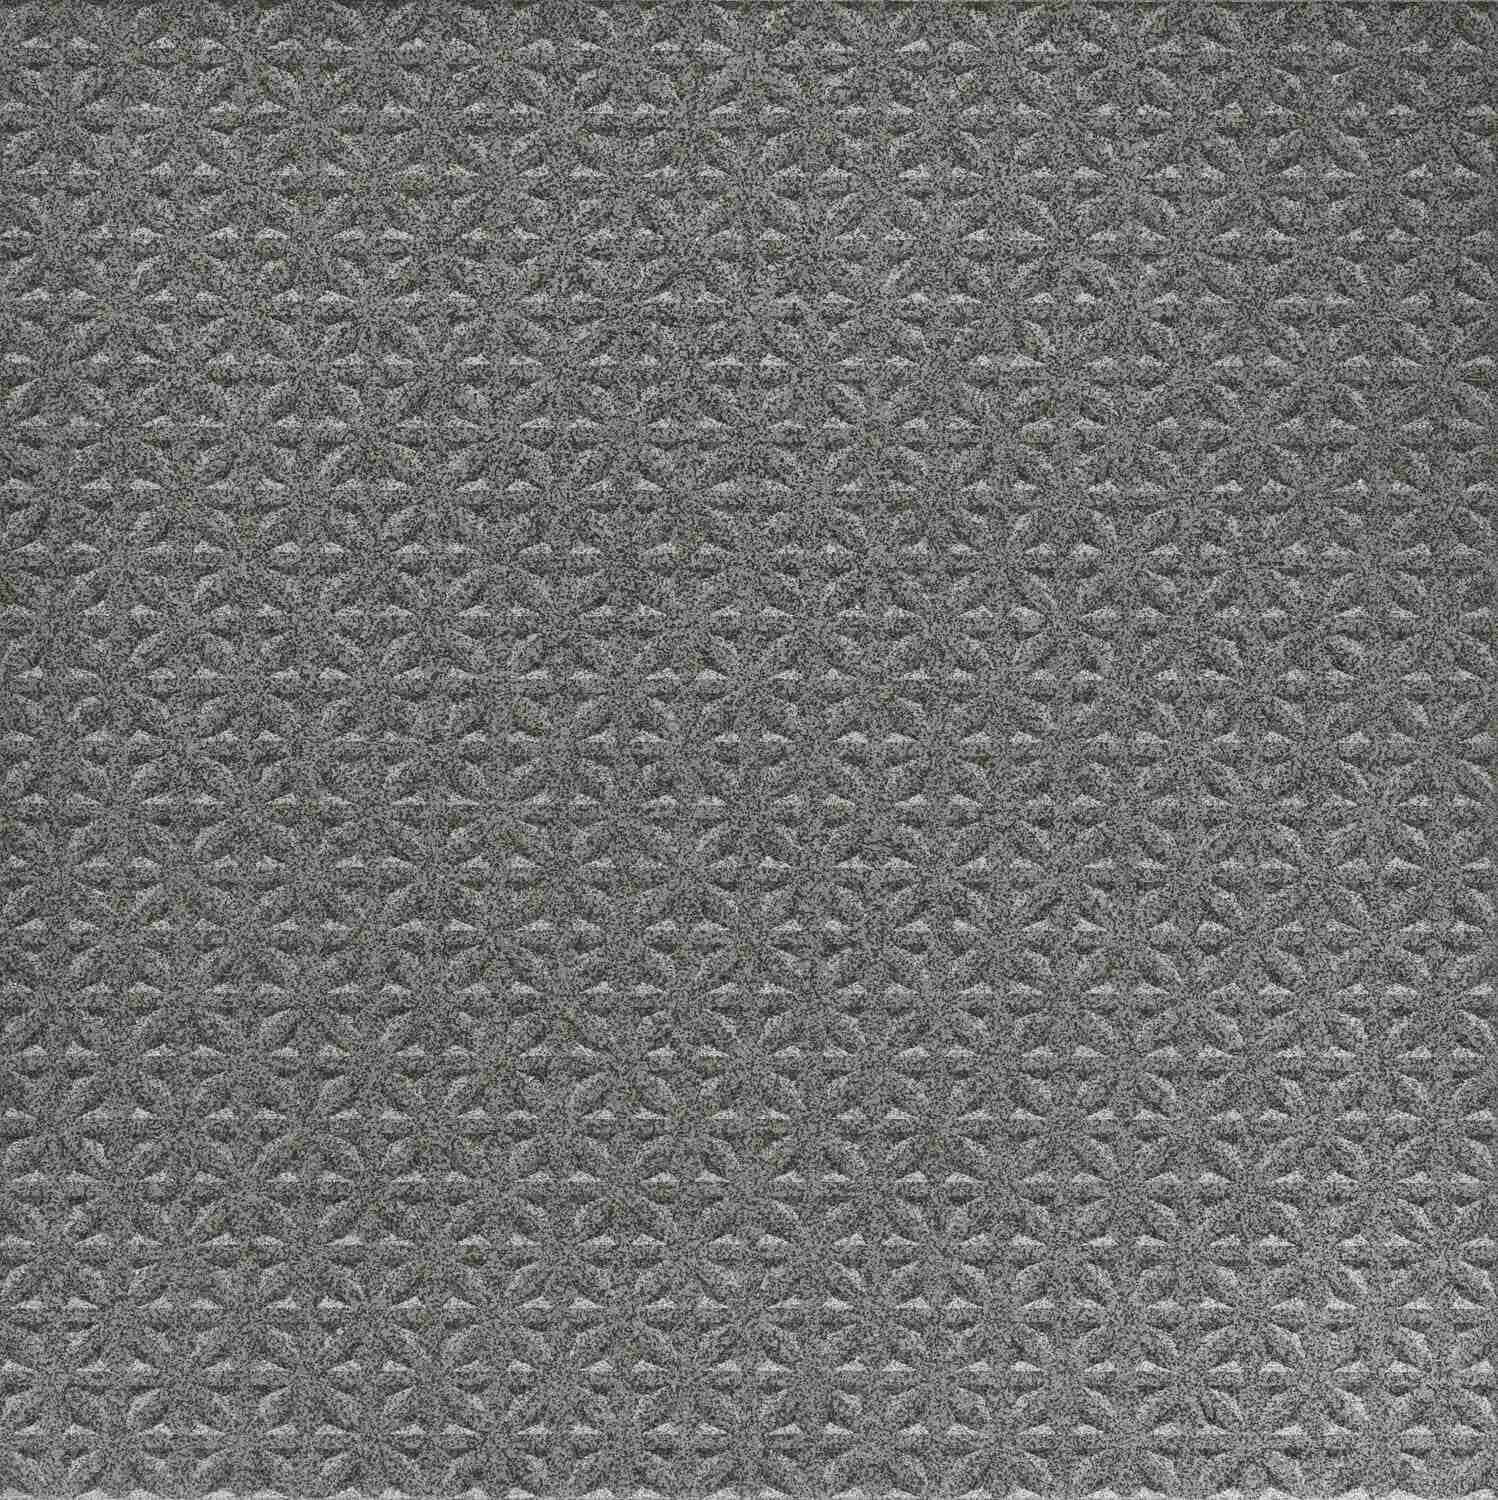 Dorset Woolliscroft Tetra Dark Grey Slip Resistant Quarry Tile 300x300mm